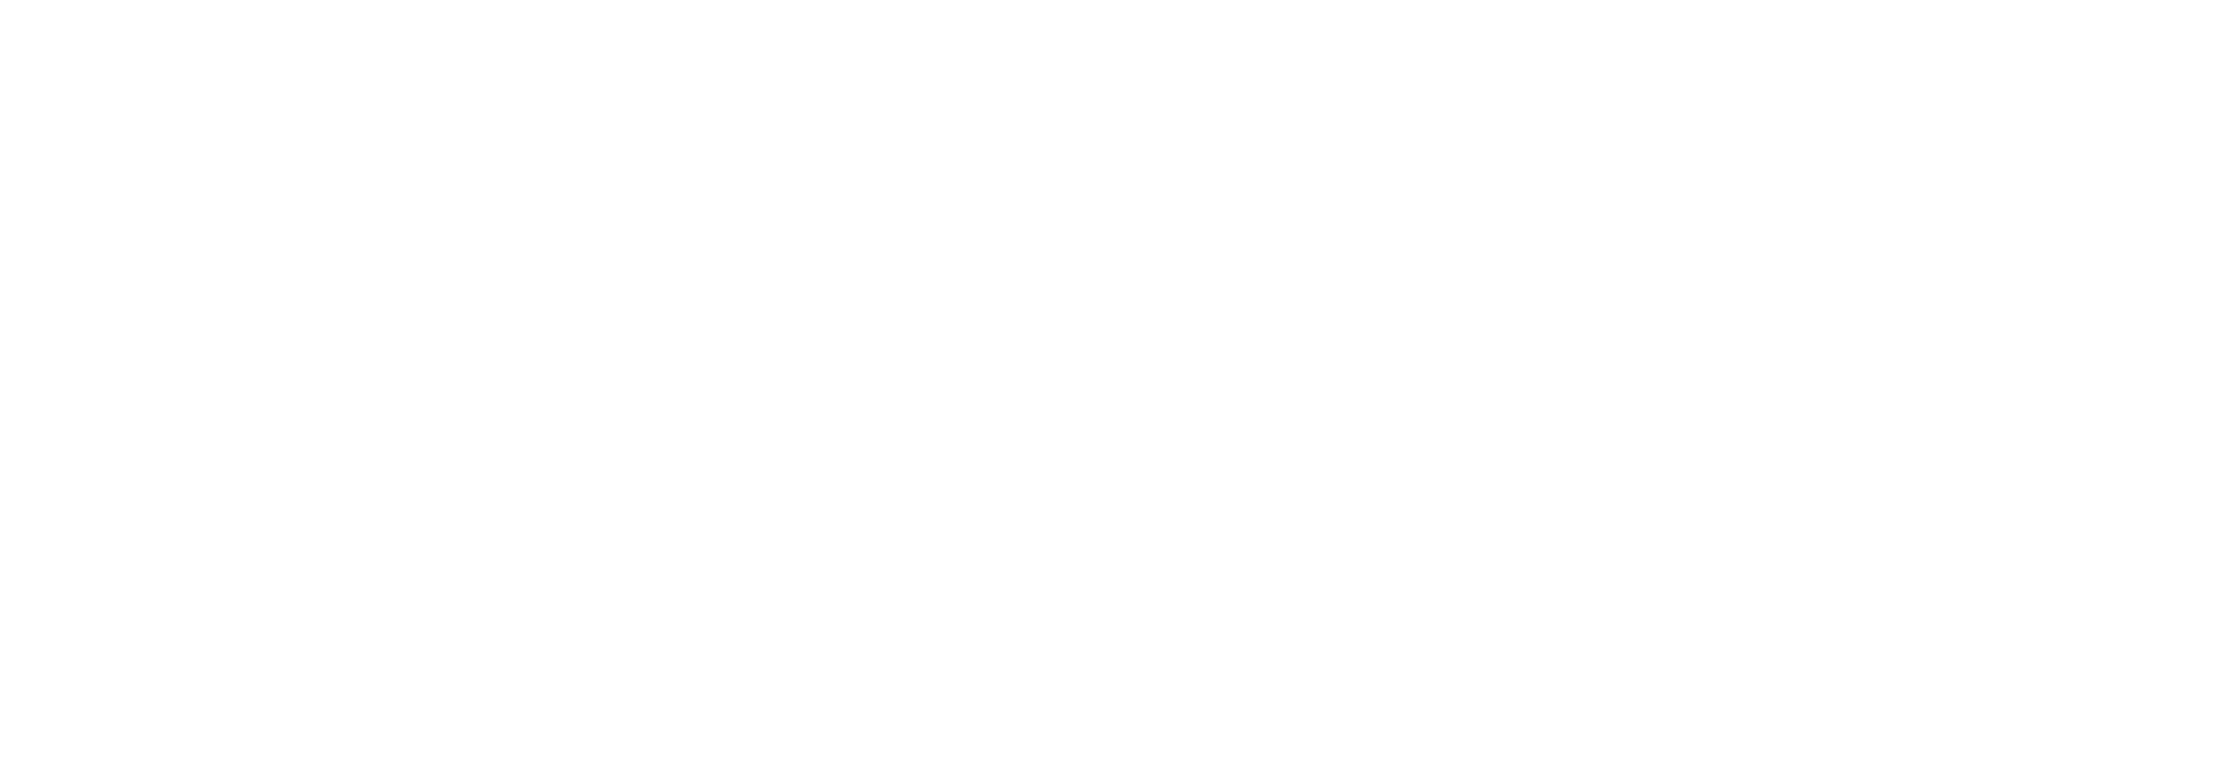 Logo SCG Assainissement